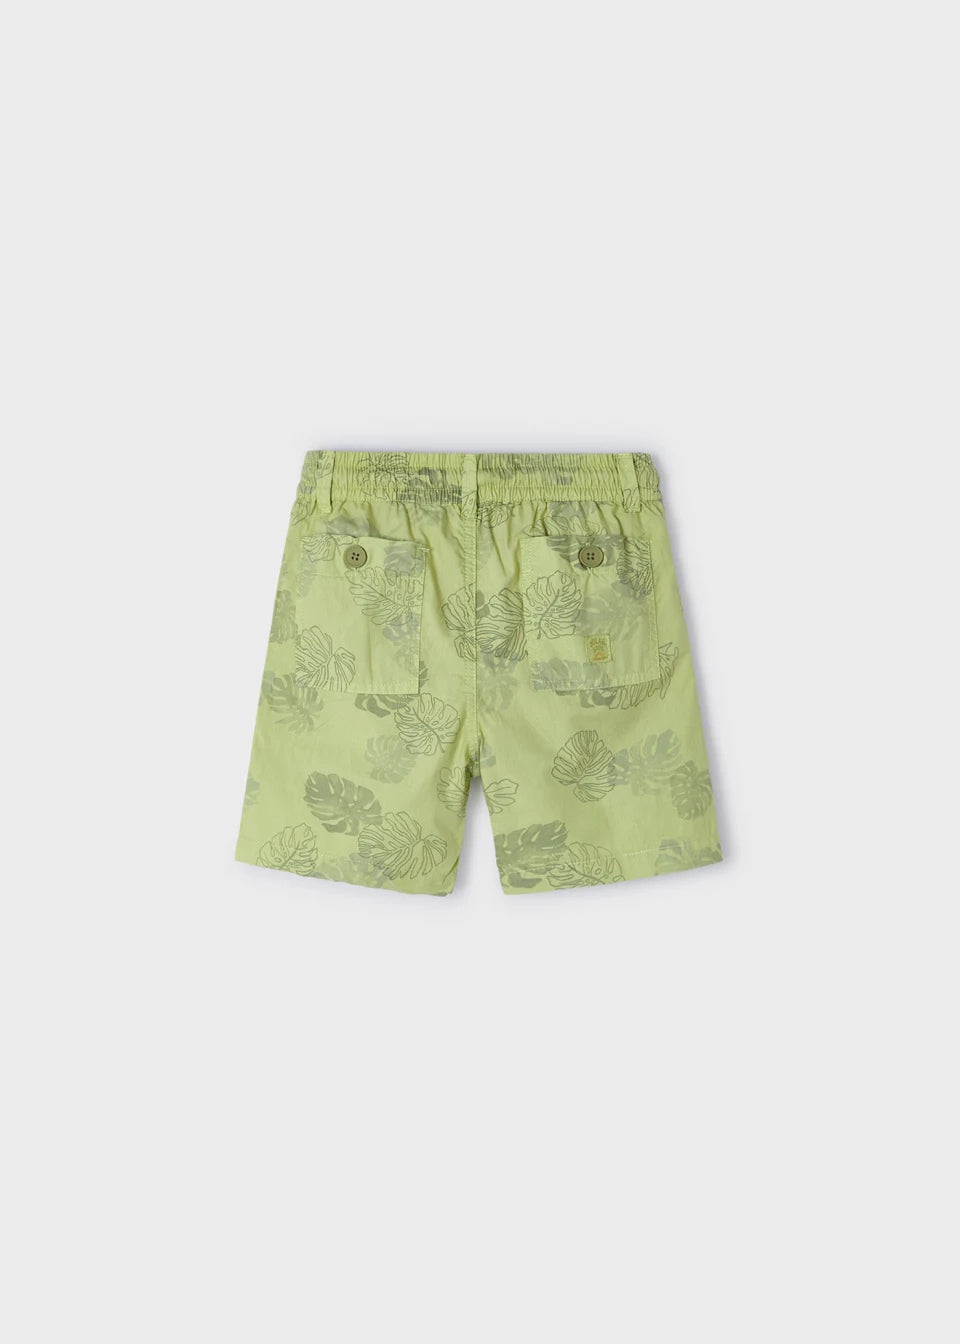 Boys green printed shorts